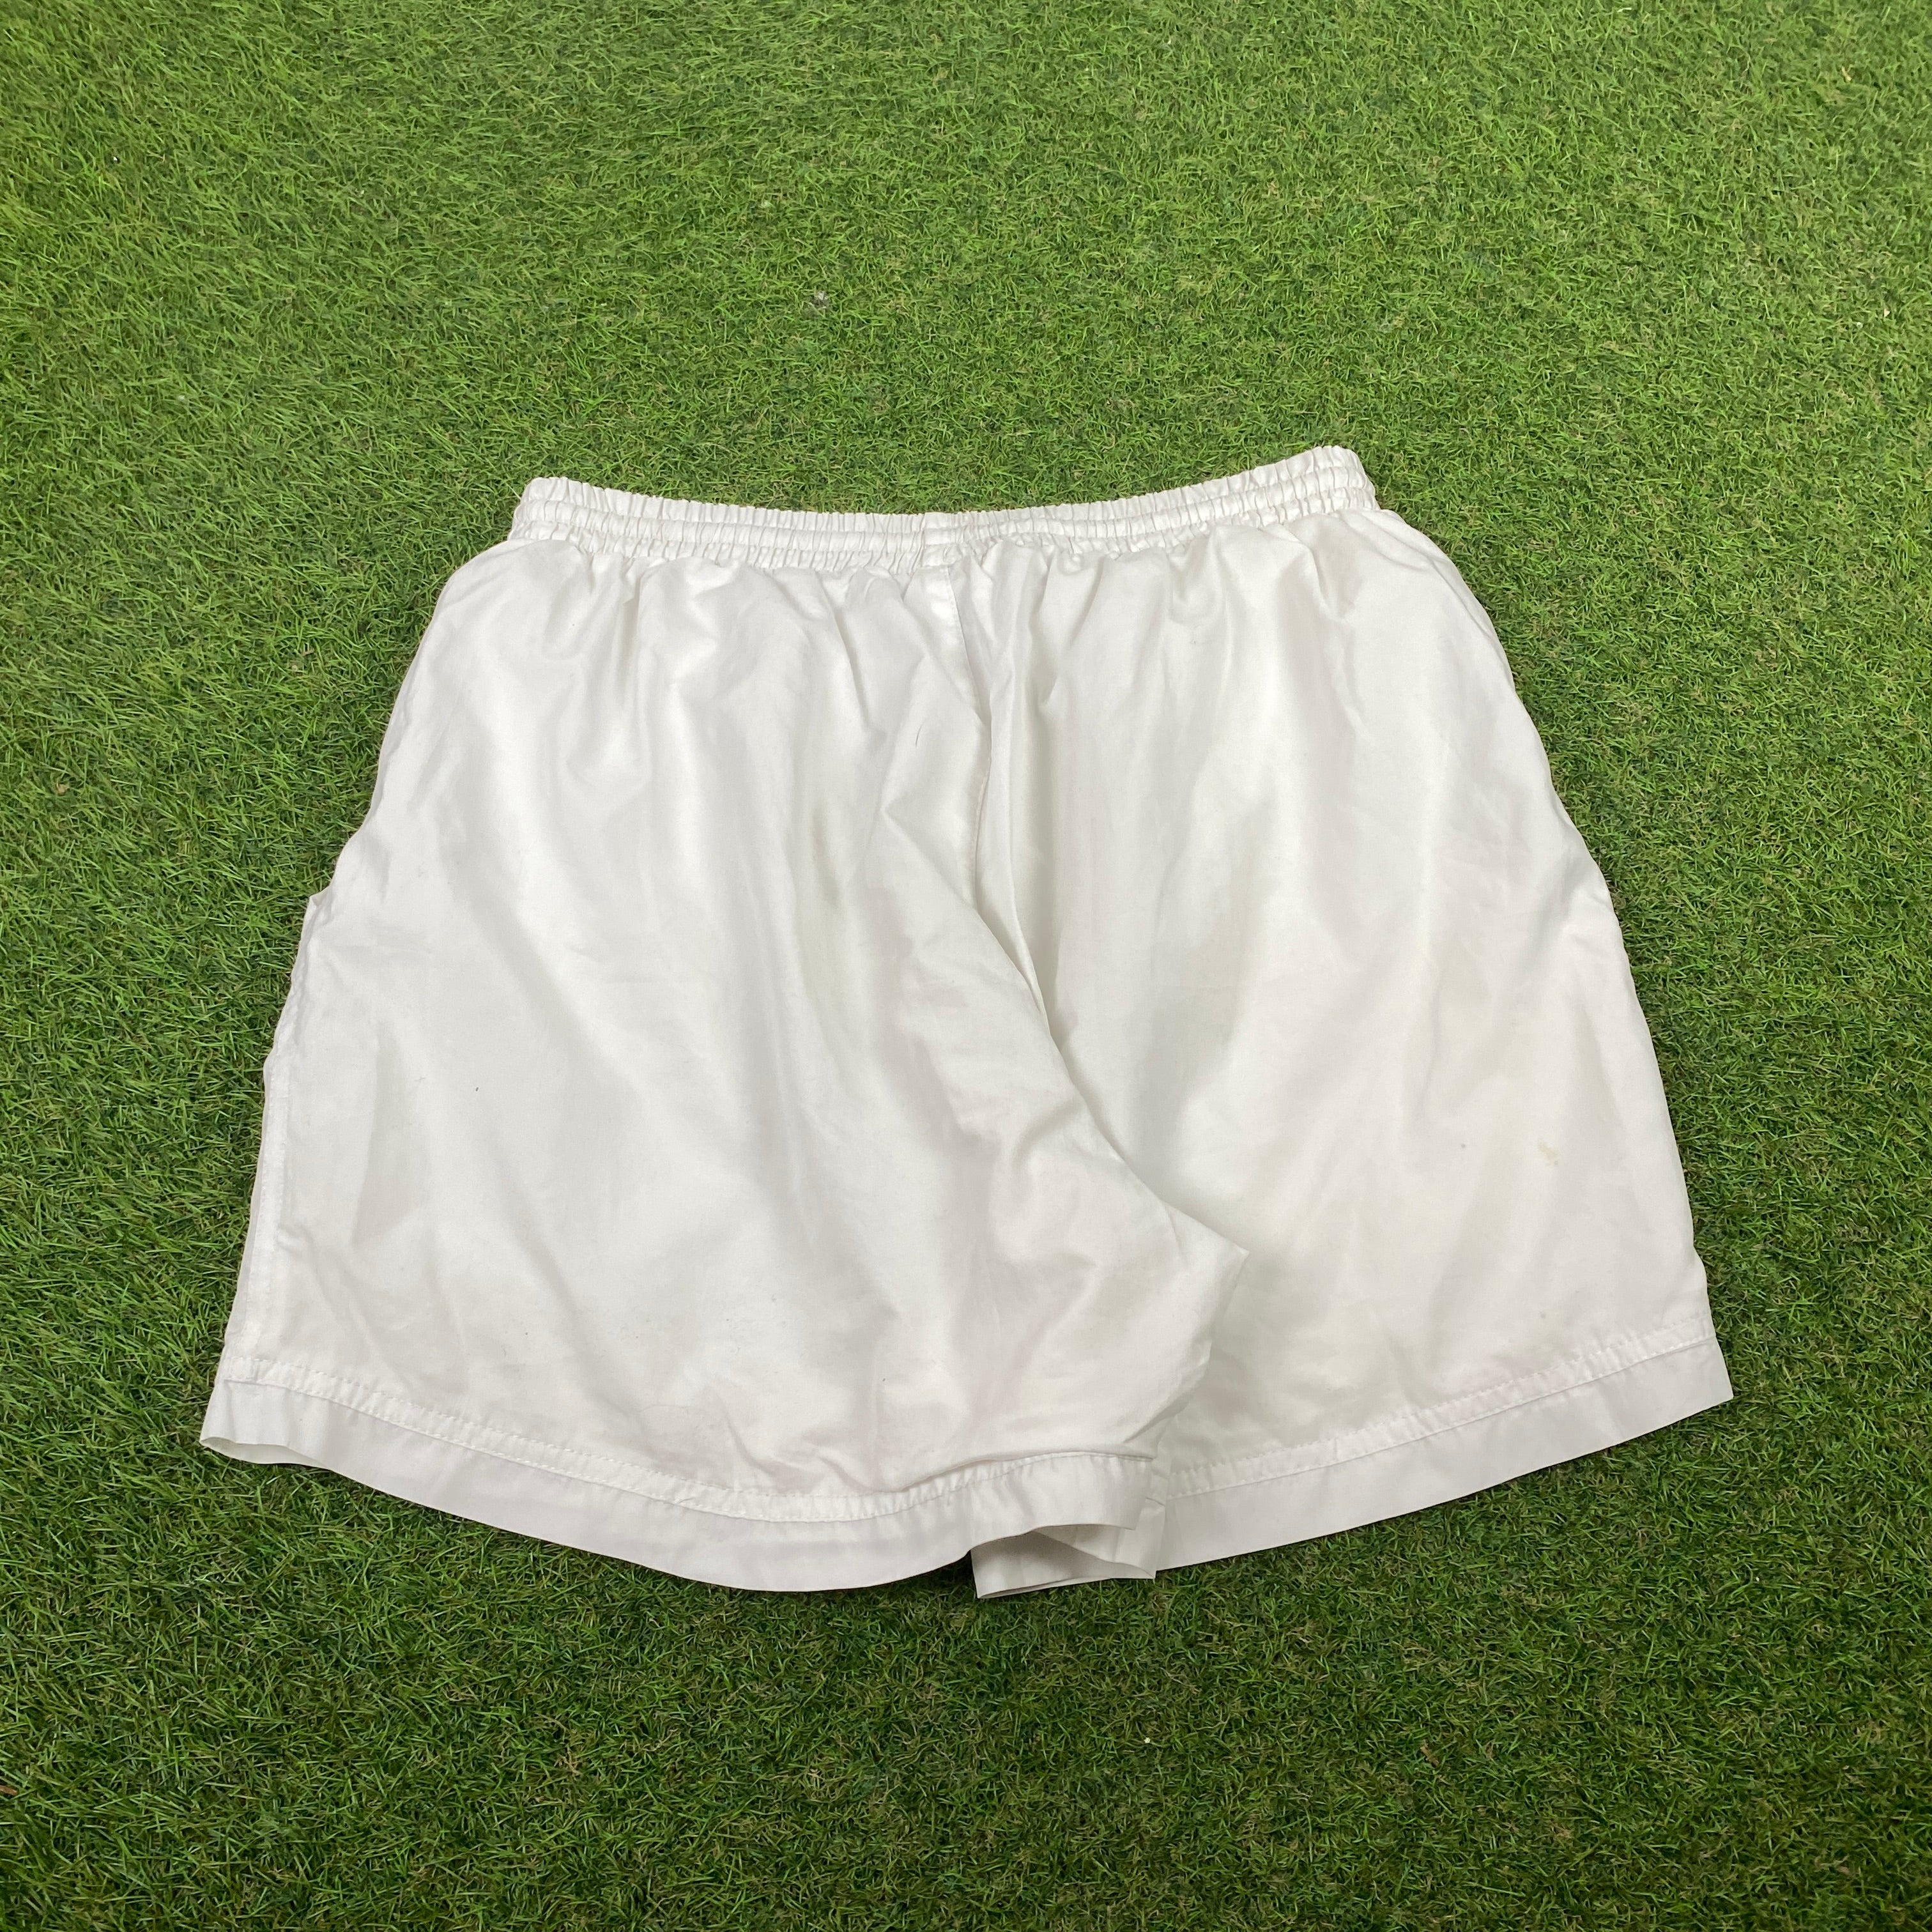 Retro Reebok Shorts White Large